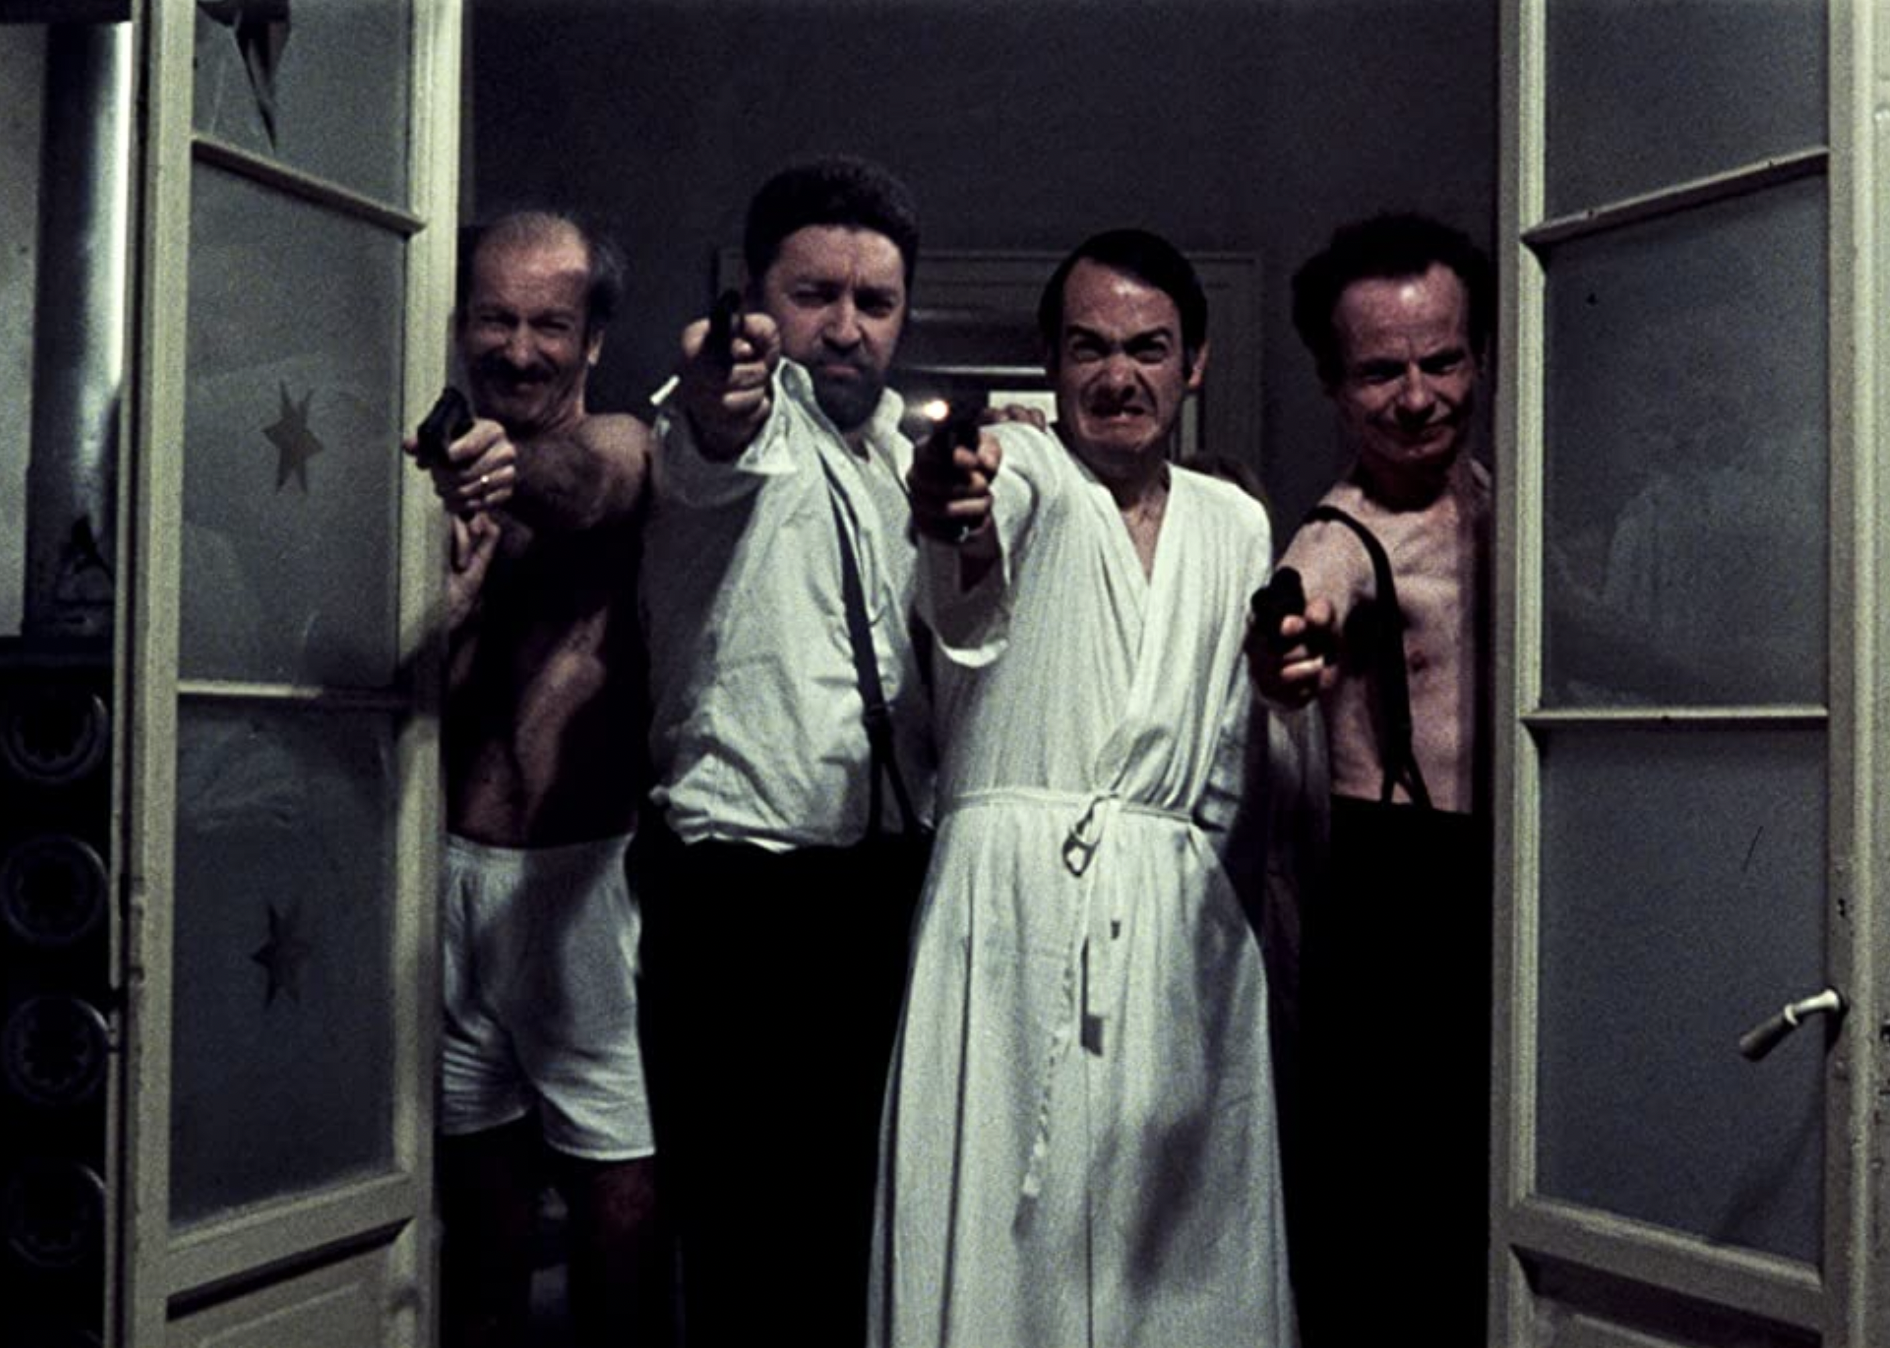 Paolo Bonacelli, Giorgio Cataldi, Uberto Paolo Quintavalle, and Aldo Valletti in "Salò, or the 120 Days of Sodom".